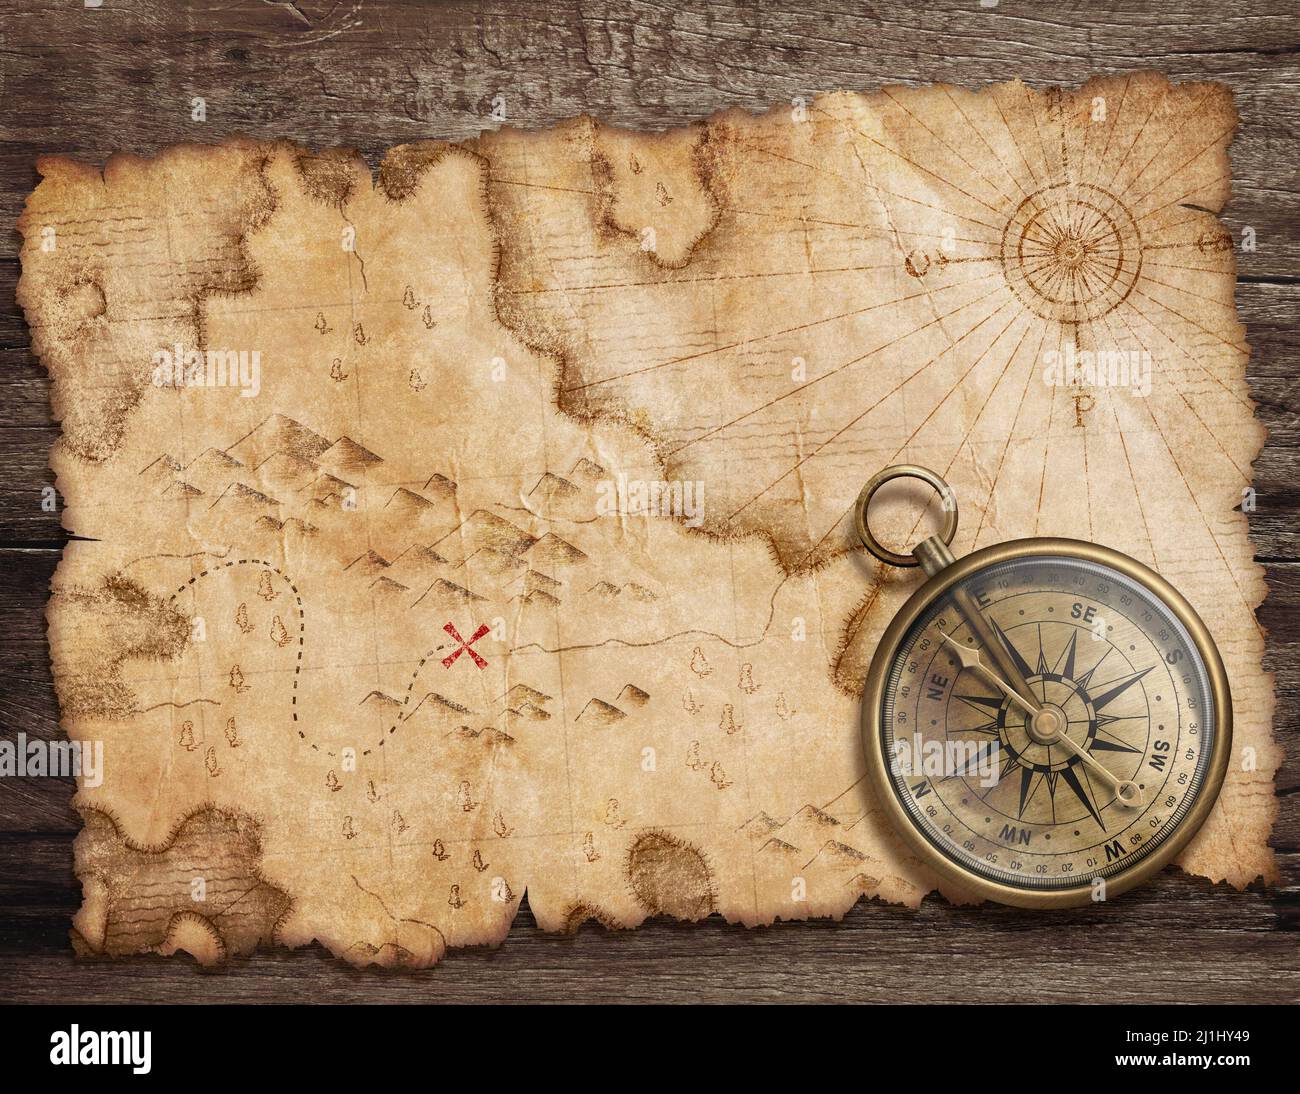 Ancienne carte des trésors déchirés avec vue du dessus du compas. Concept aventure et voyage. Banque D'Images